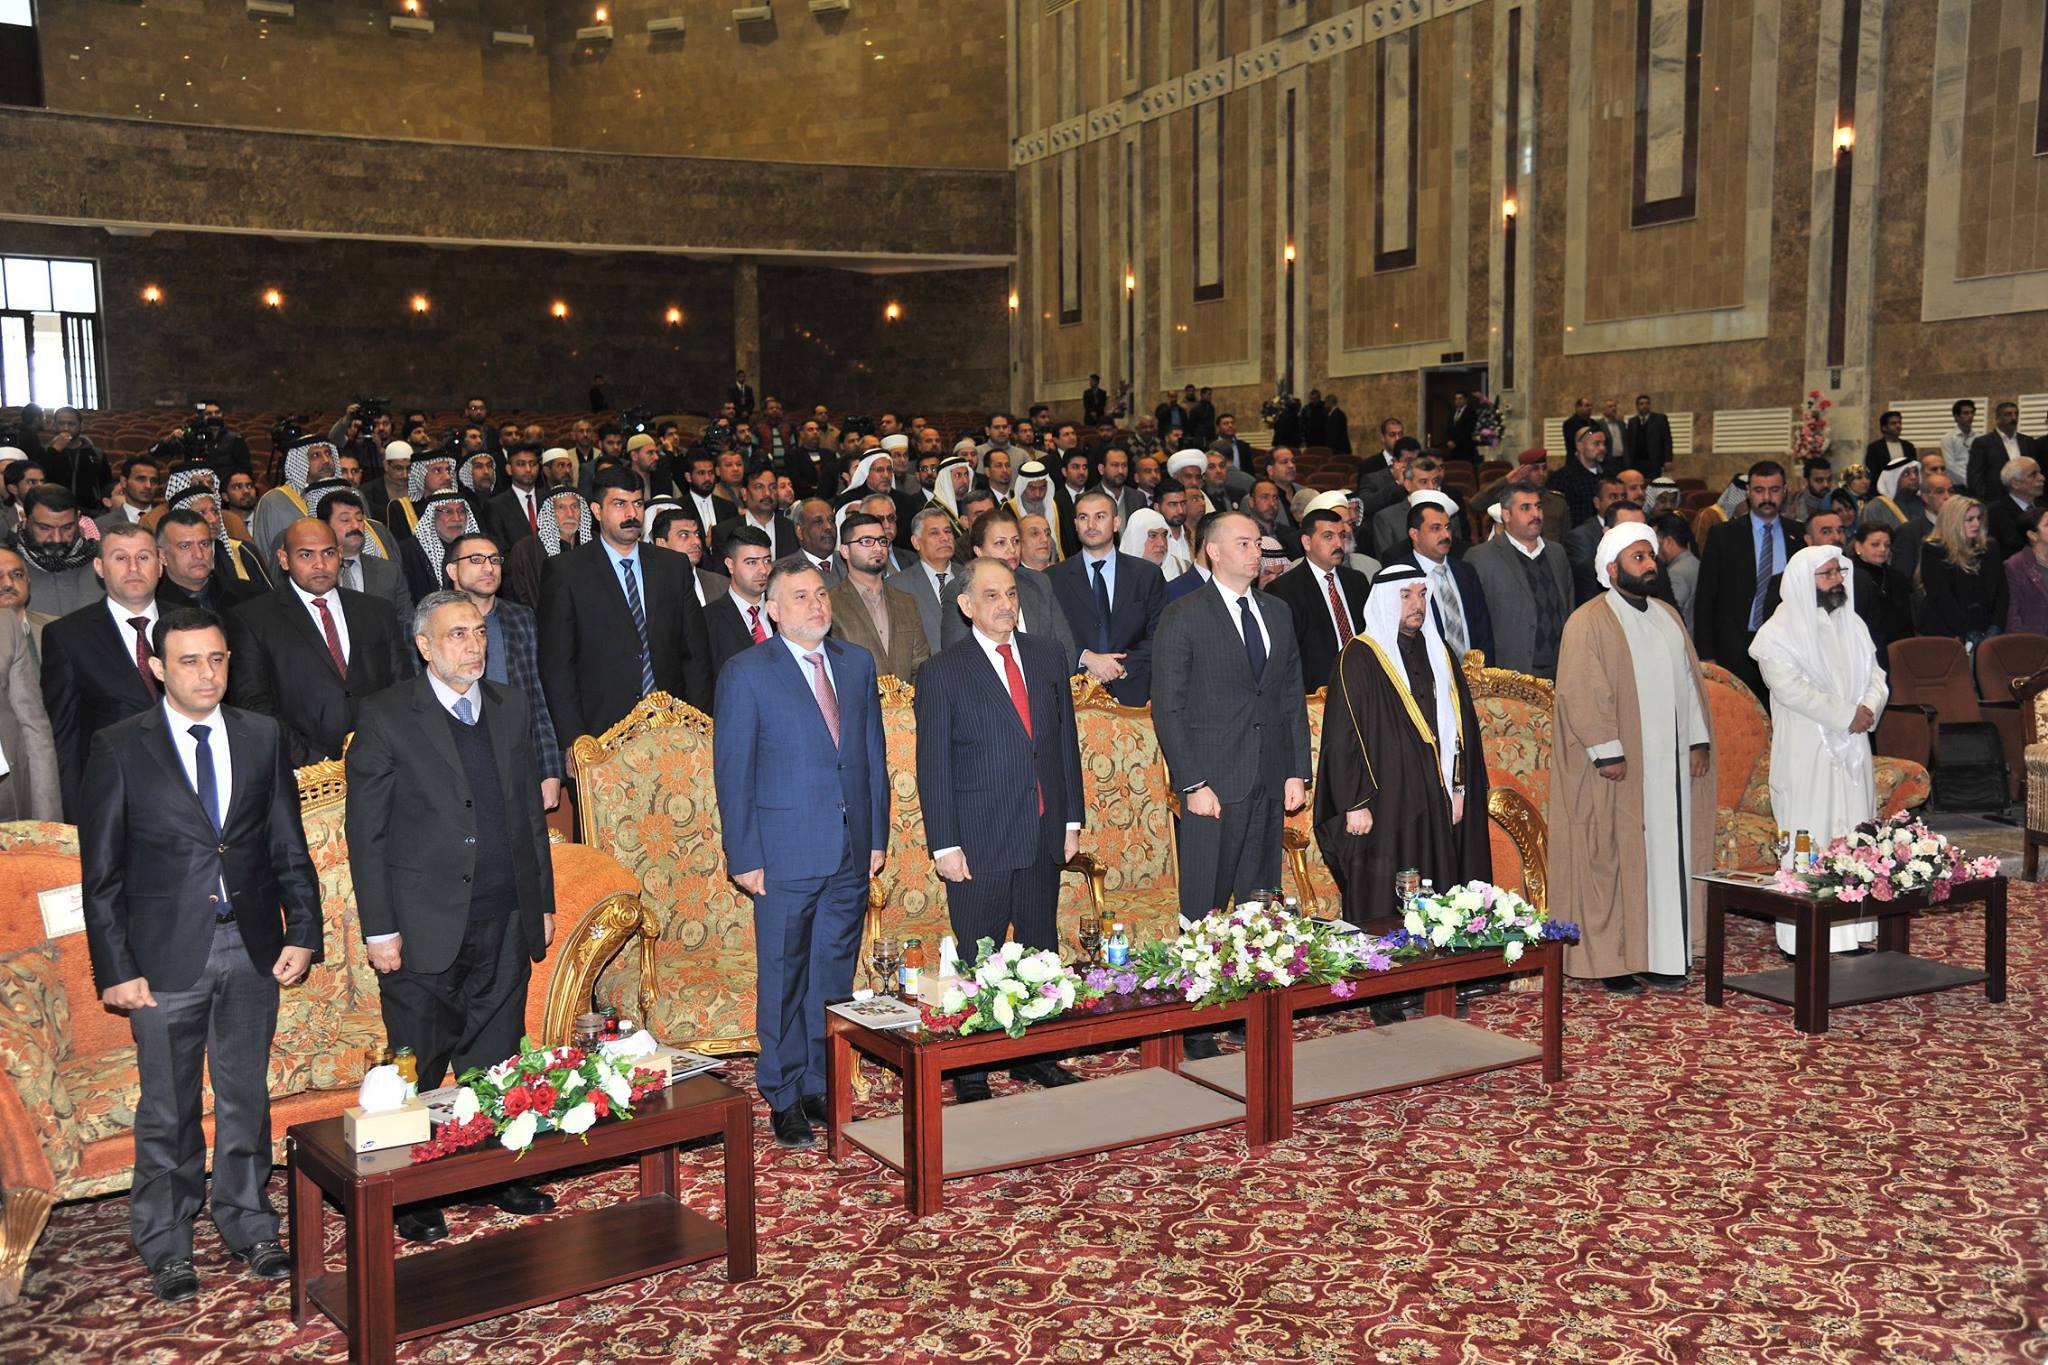 ديوان الوقف السني يحتضن المؤتمر الوطني للاديان والمذاهب في العراق بنسخته الثالثة (8)